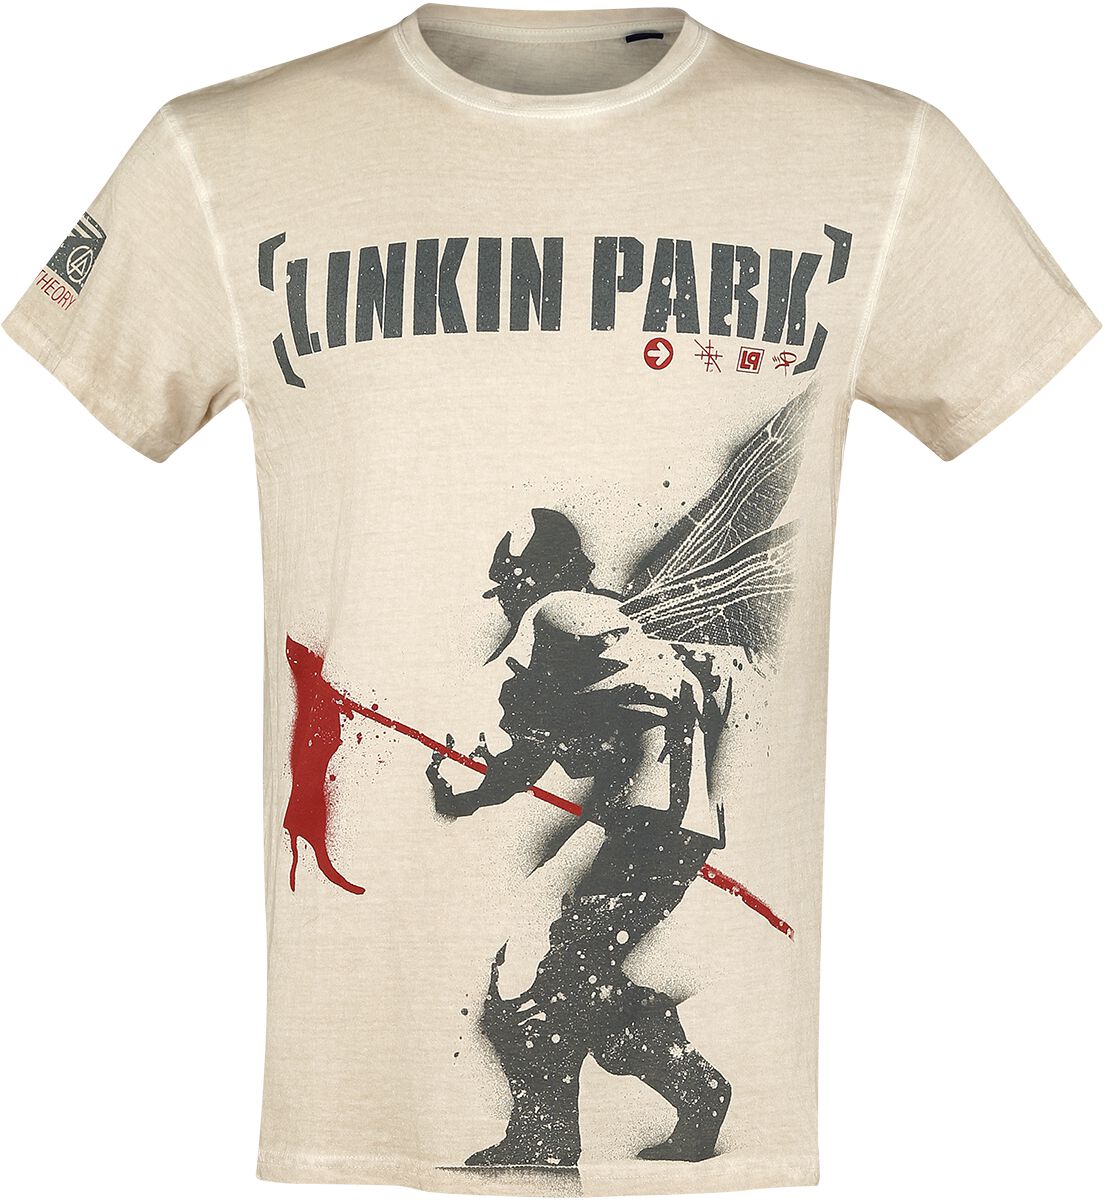 T-Shirt Manches courtes de Linkin Park - Hybrid Theory - S à 4XL - pour Homme - blanc cassé